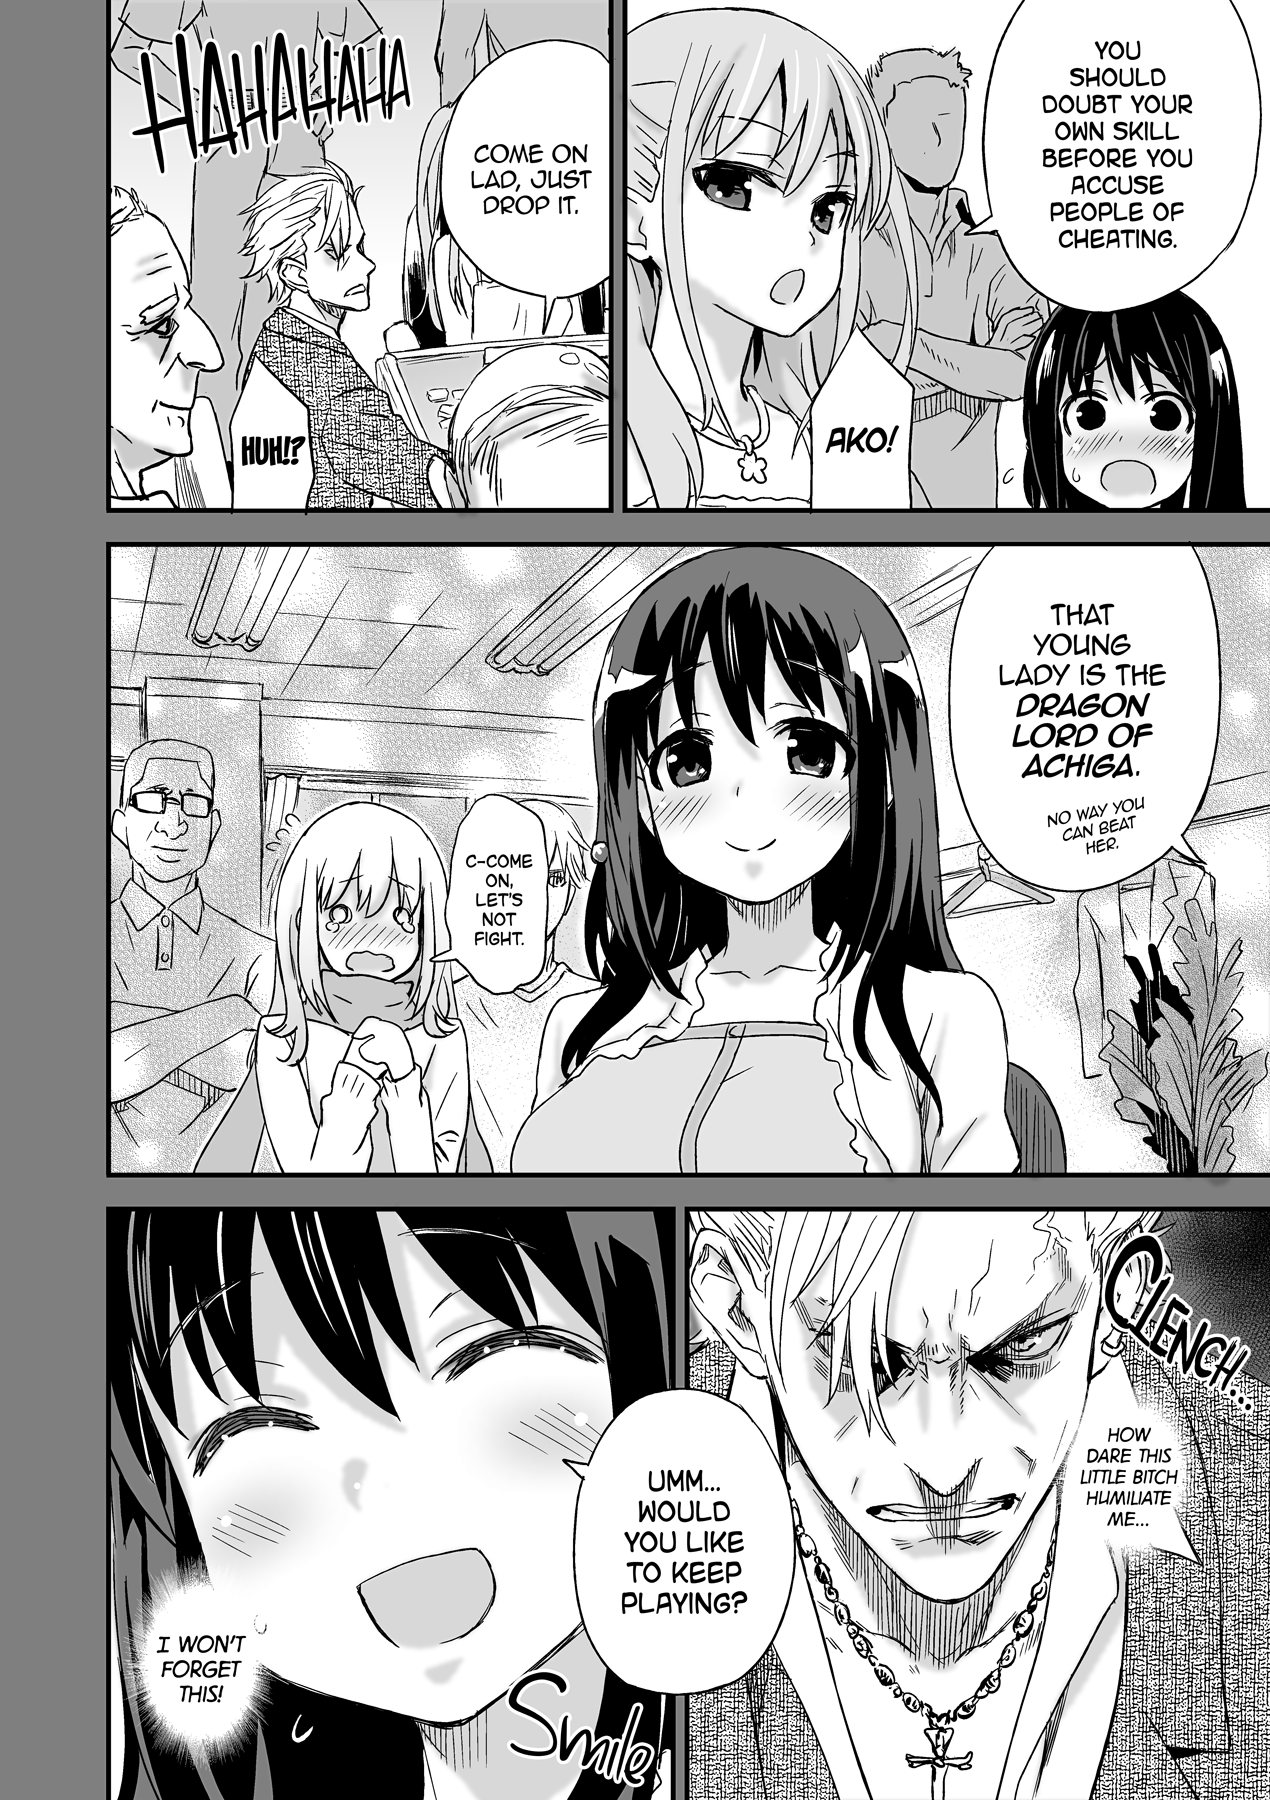 Victim Girls 13 - DRAGON SLAYER hentai manga picture 12